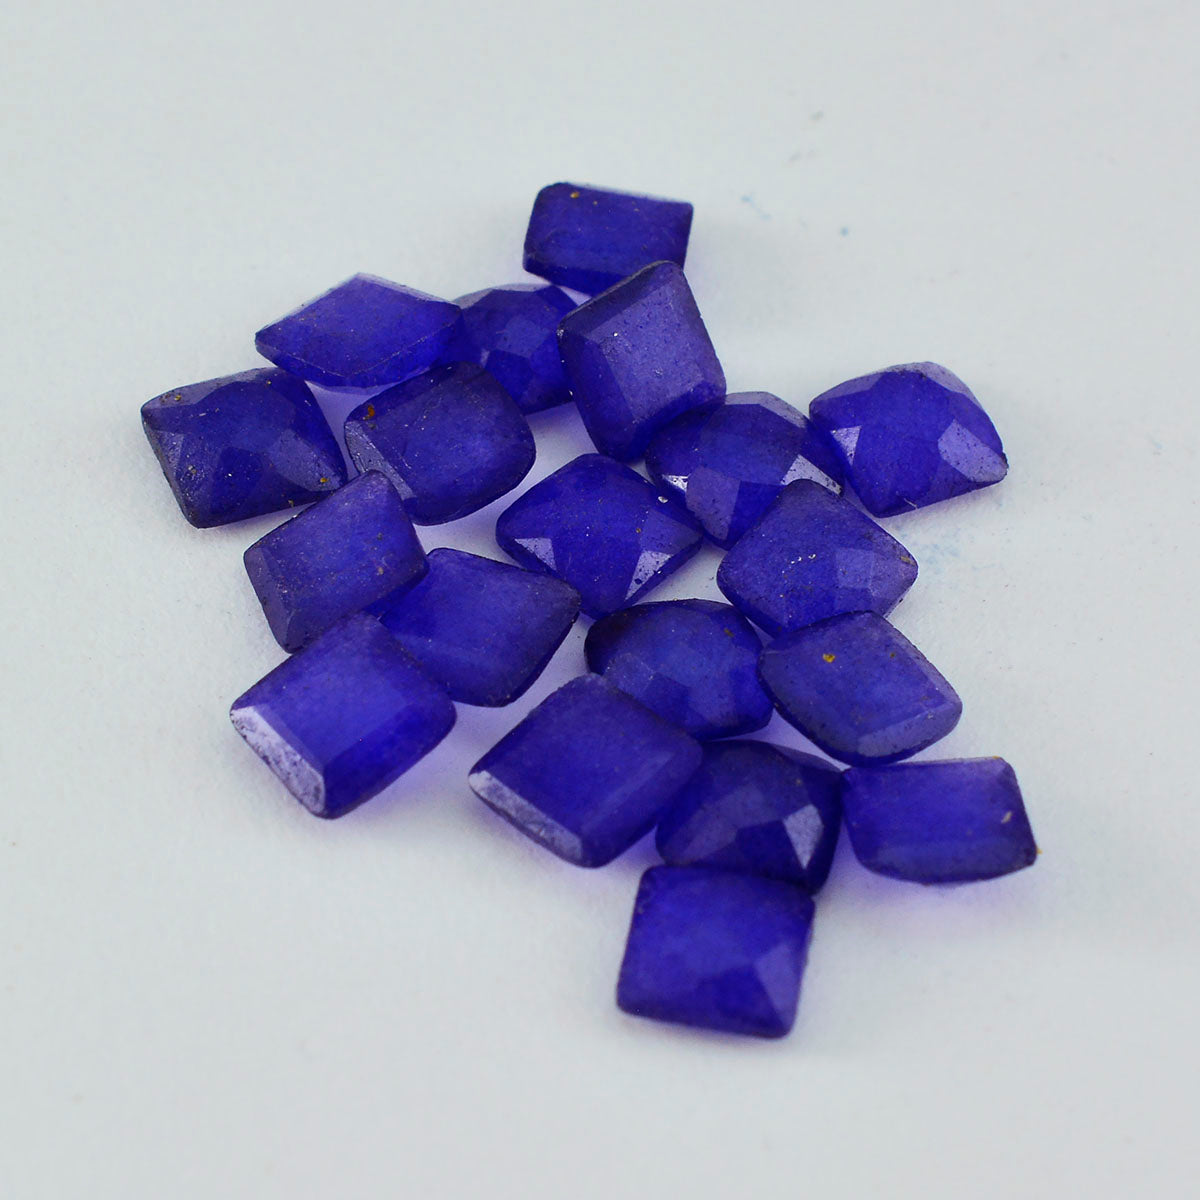 riyogems, 1 шт., настоящая синяя яшма, граненая 5x5 мм, квадратная форма, хорошее качество, свободный драгоценный камень